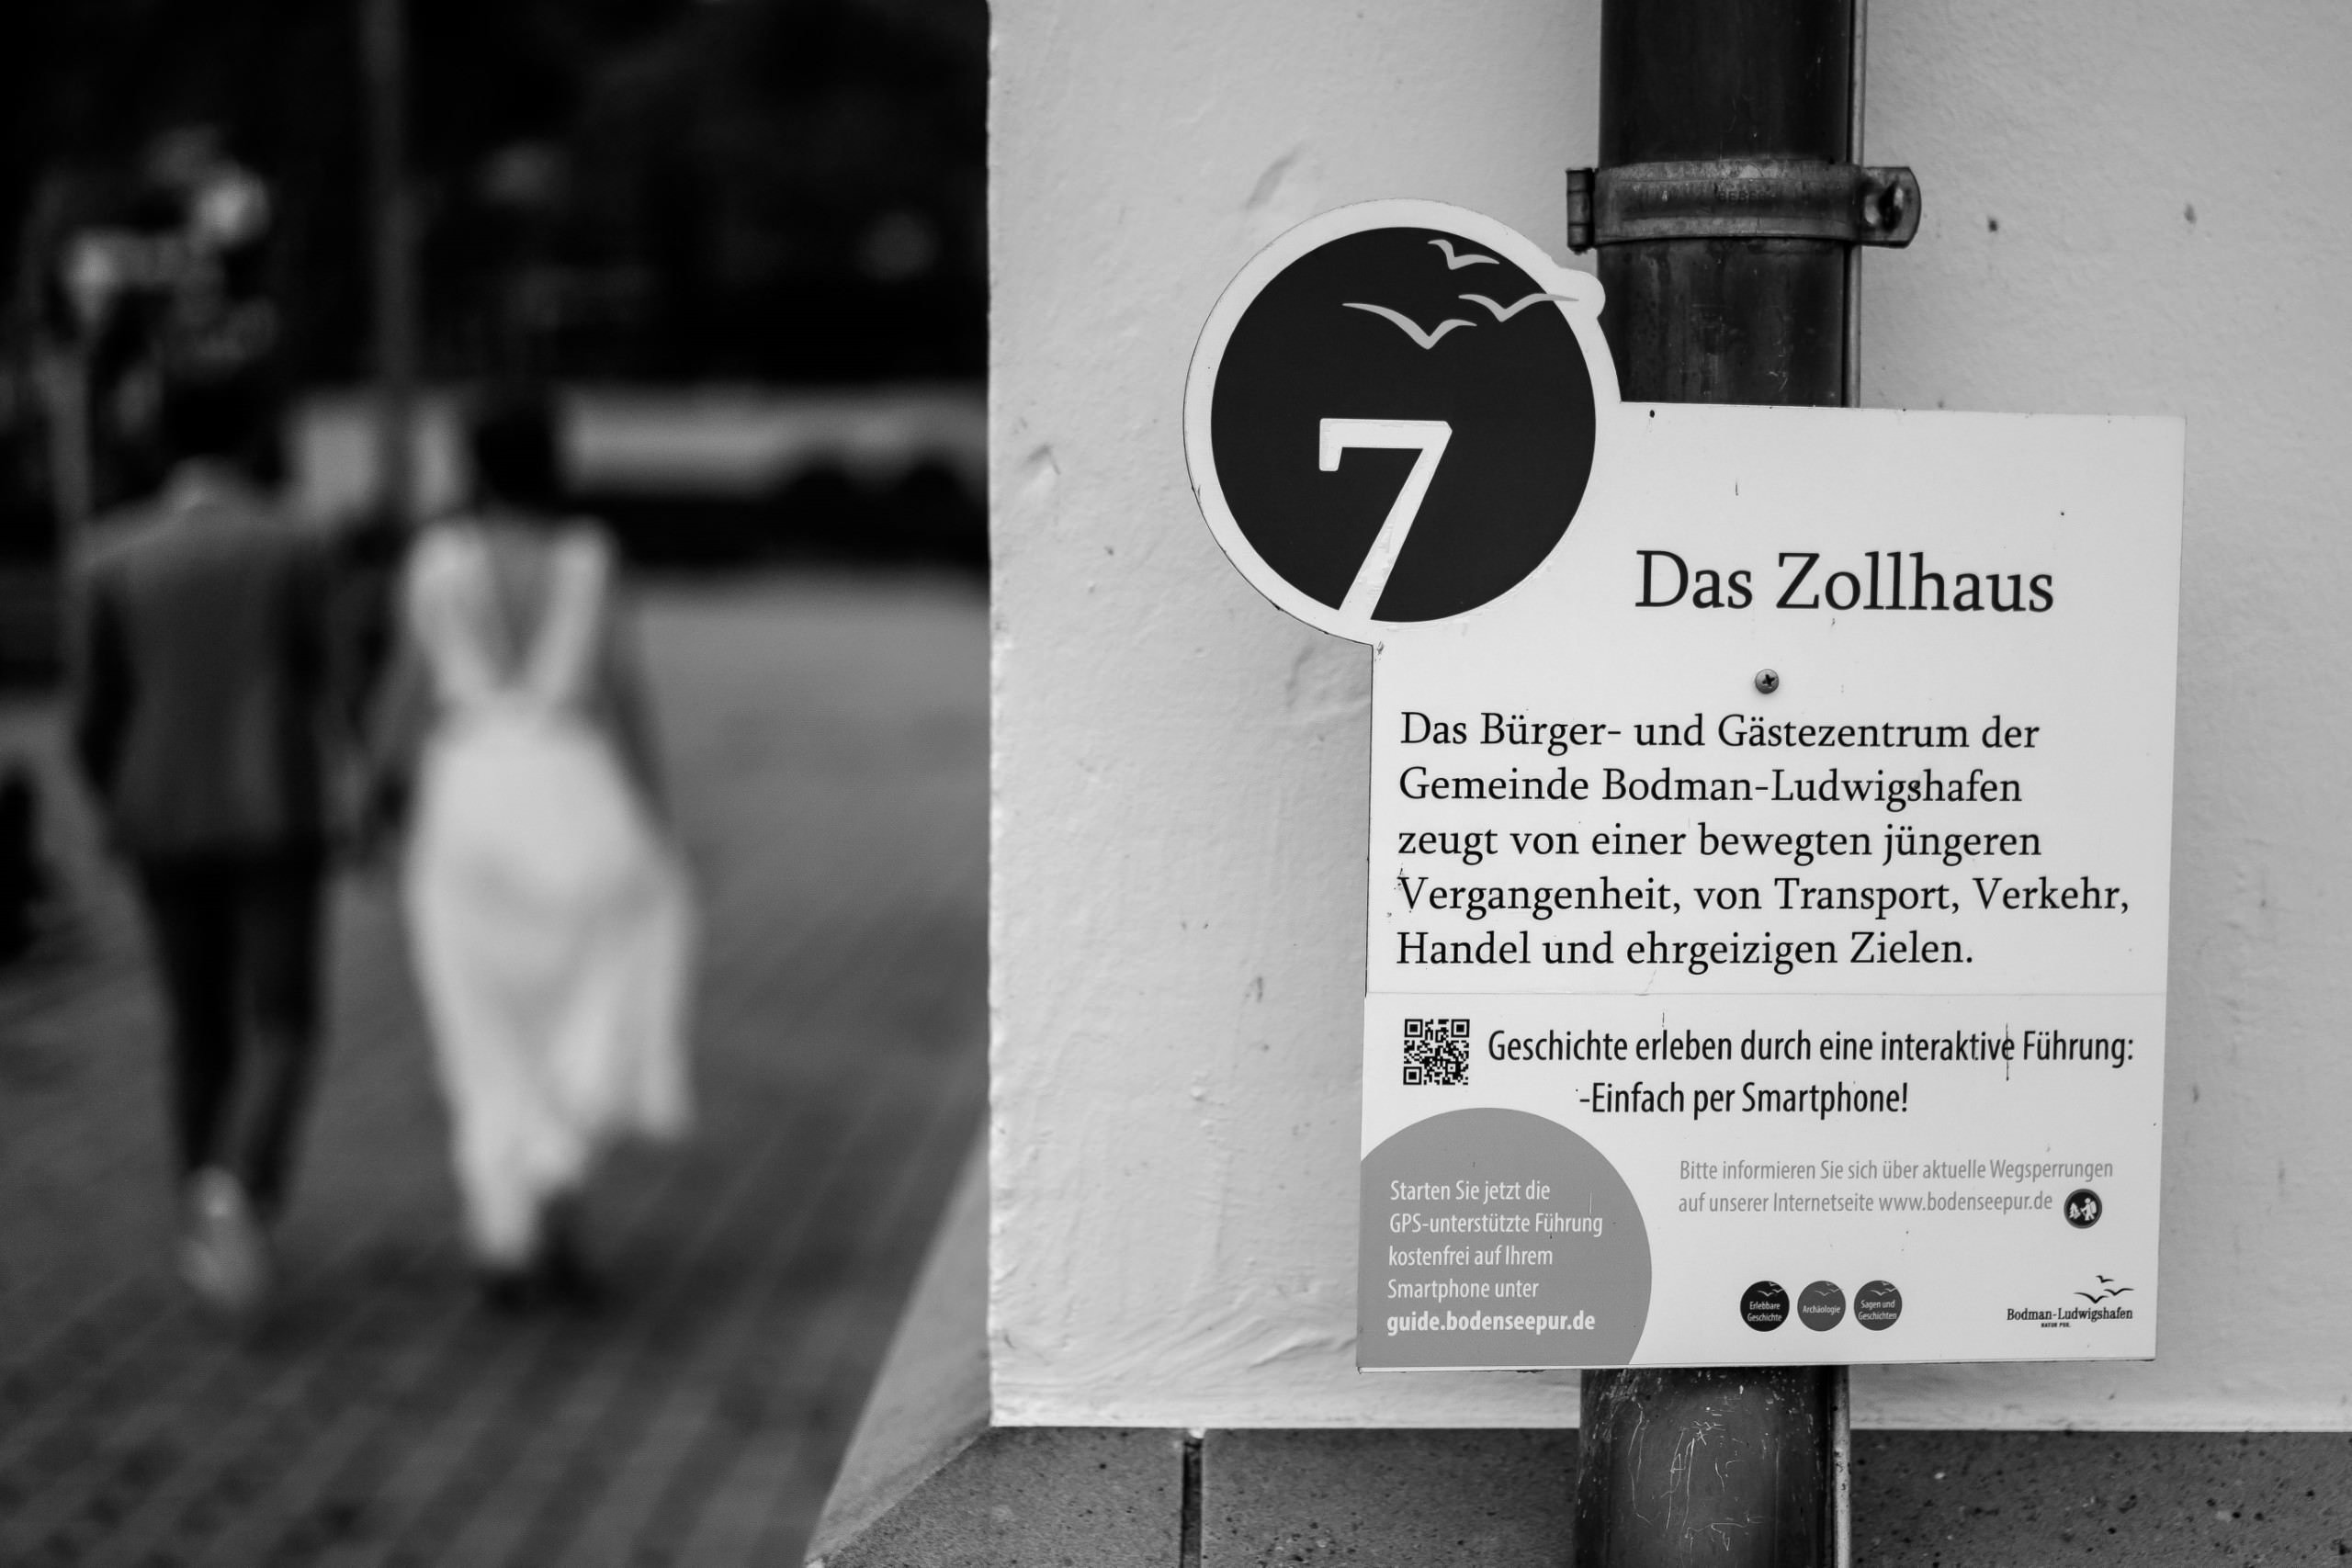 Aida + Tim | Hochzeitsfotografen am Bodensee Hochzeit - Zollhaus, Ludwigshafen  - Hochzeitsfotografie von Aida und Tim